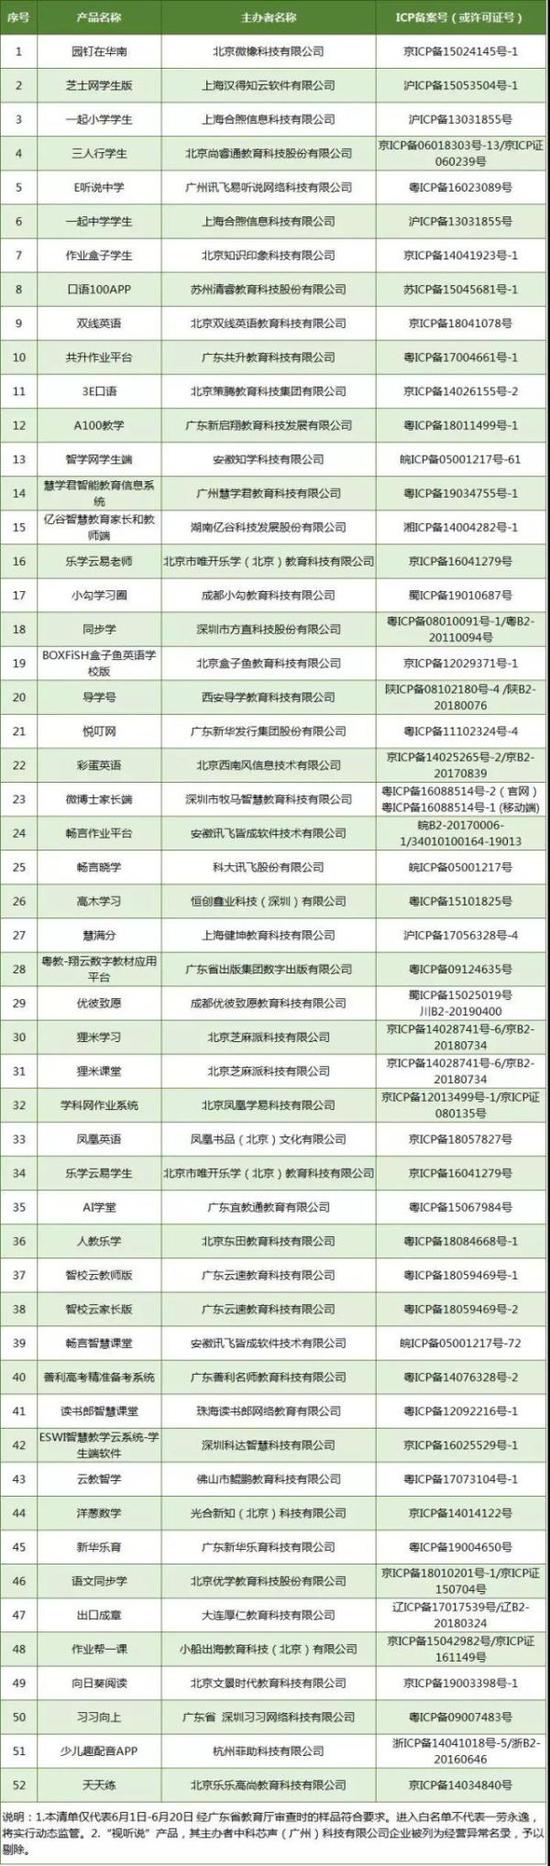 广东公布首批学习类APP白名单